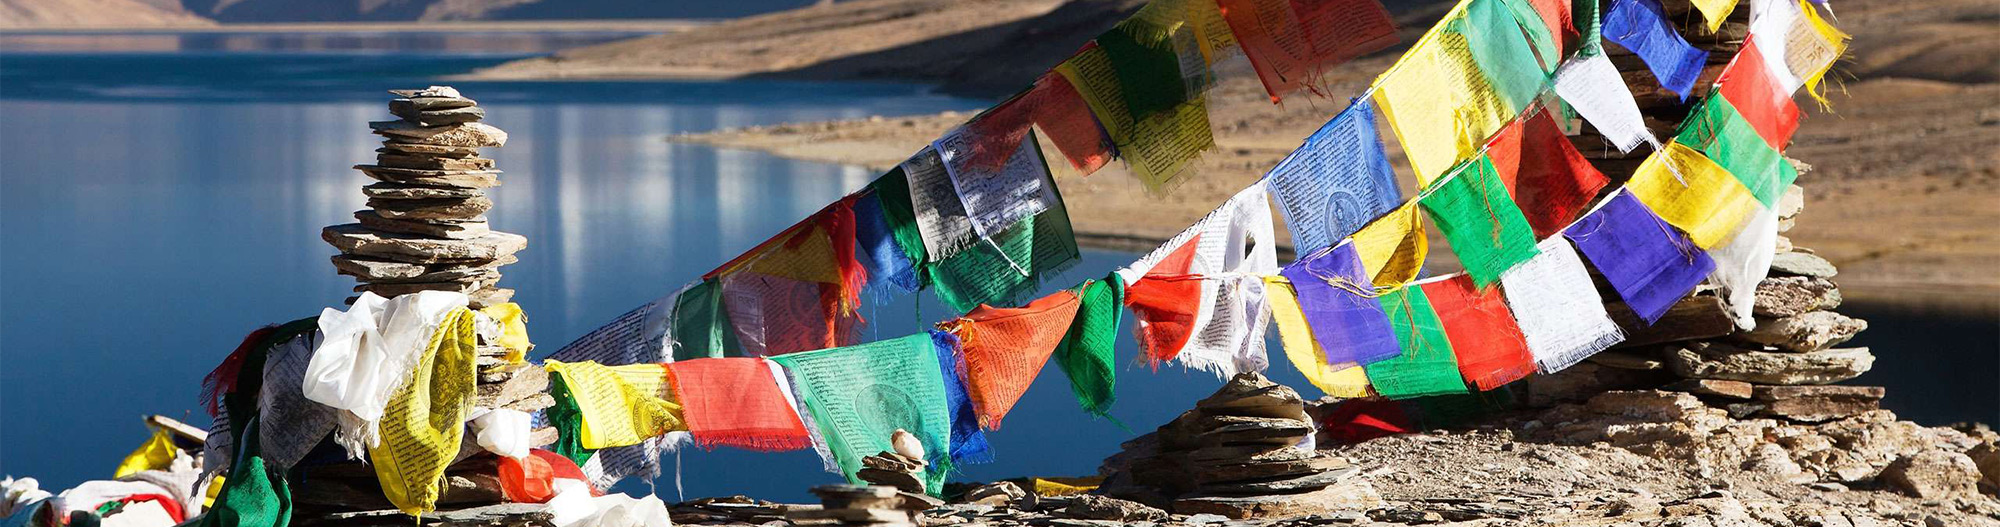 Tibet_2560x1440_WEB_s